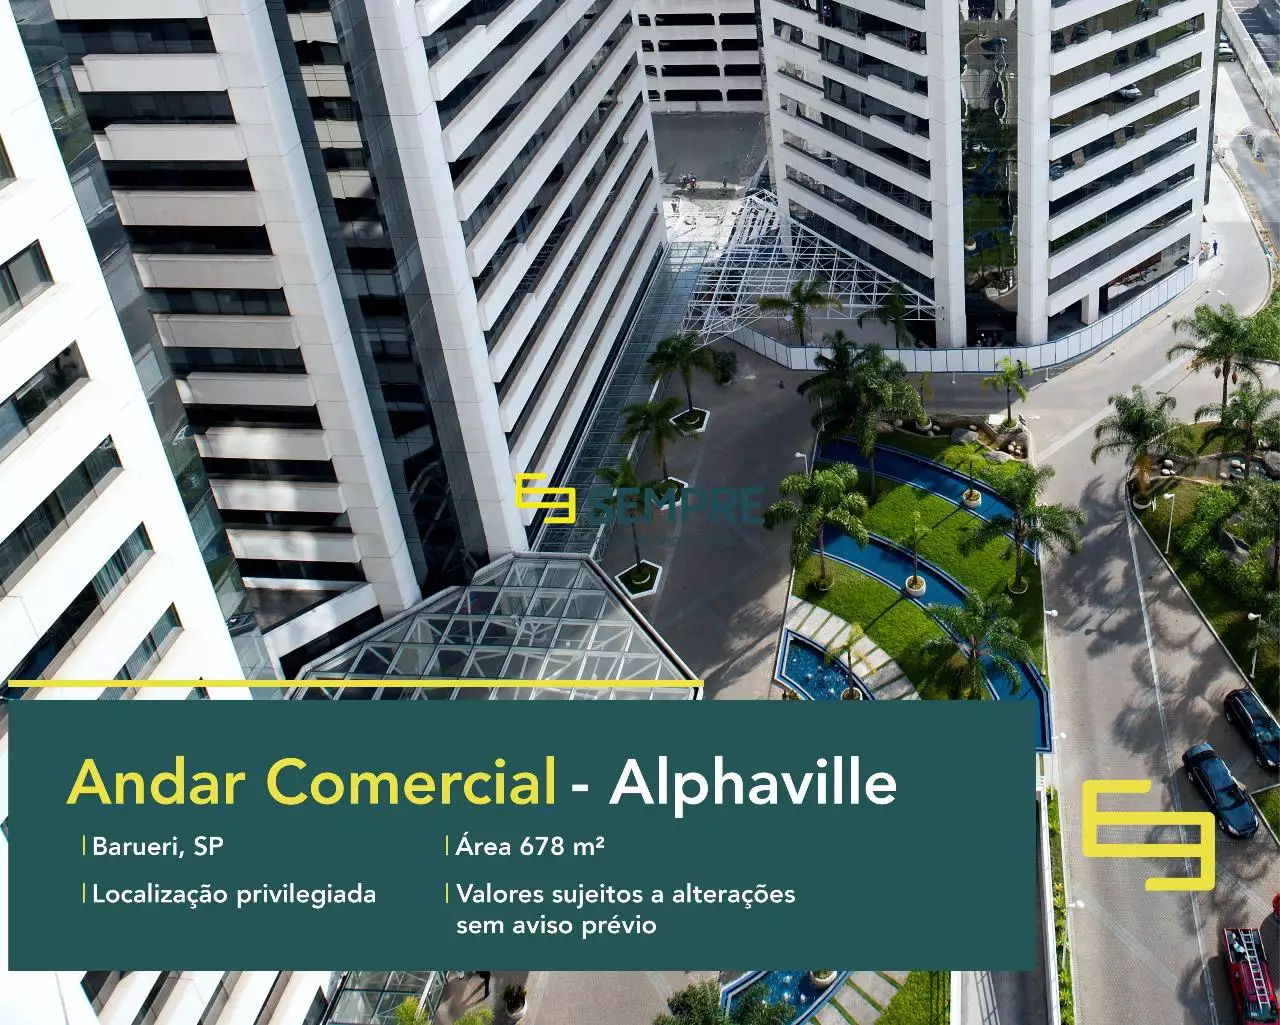 Laje corporativa em Alphaville para locação - Barueri, excelente localização. O estabelecimento comercial conta com área de 678 m².